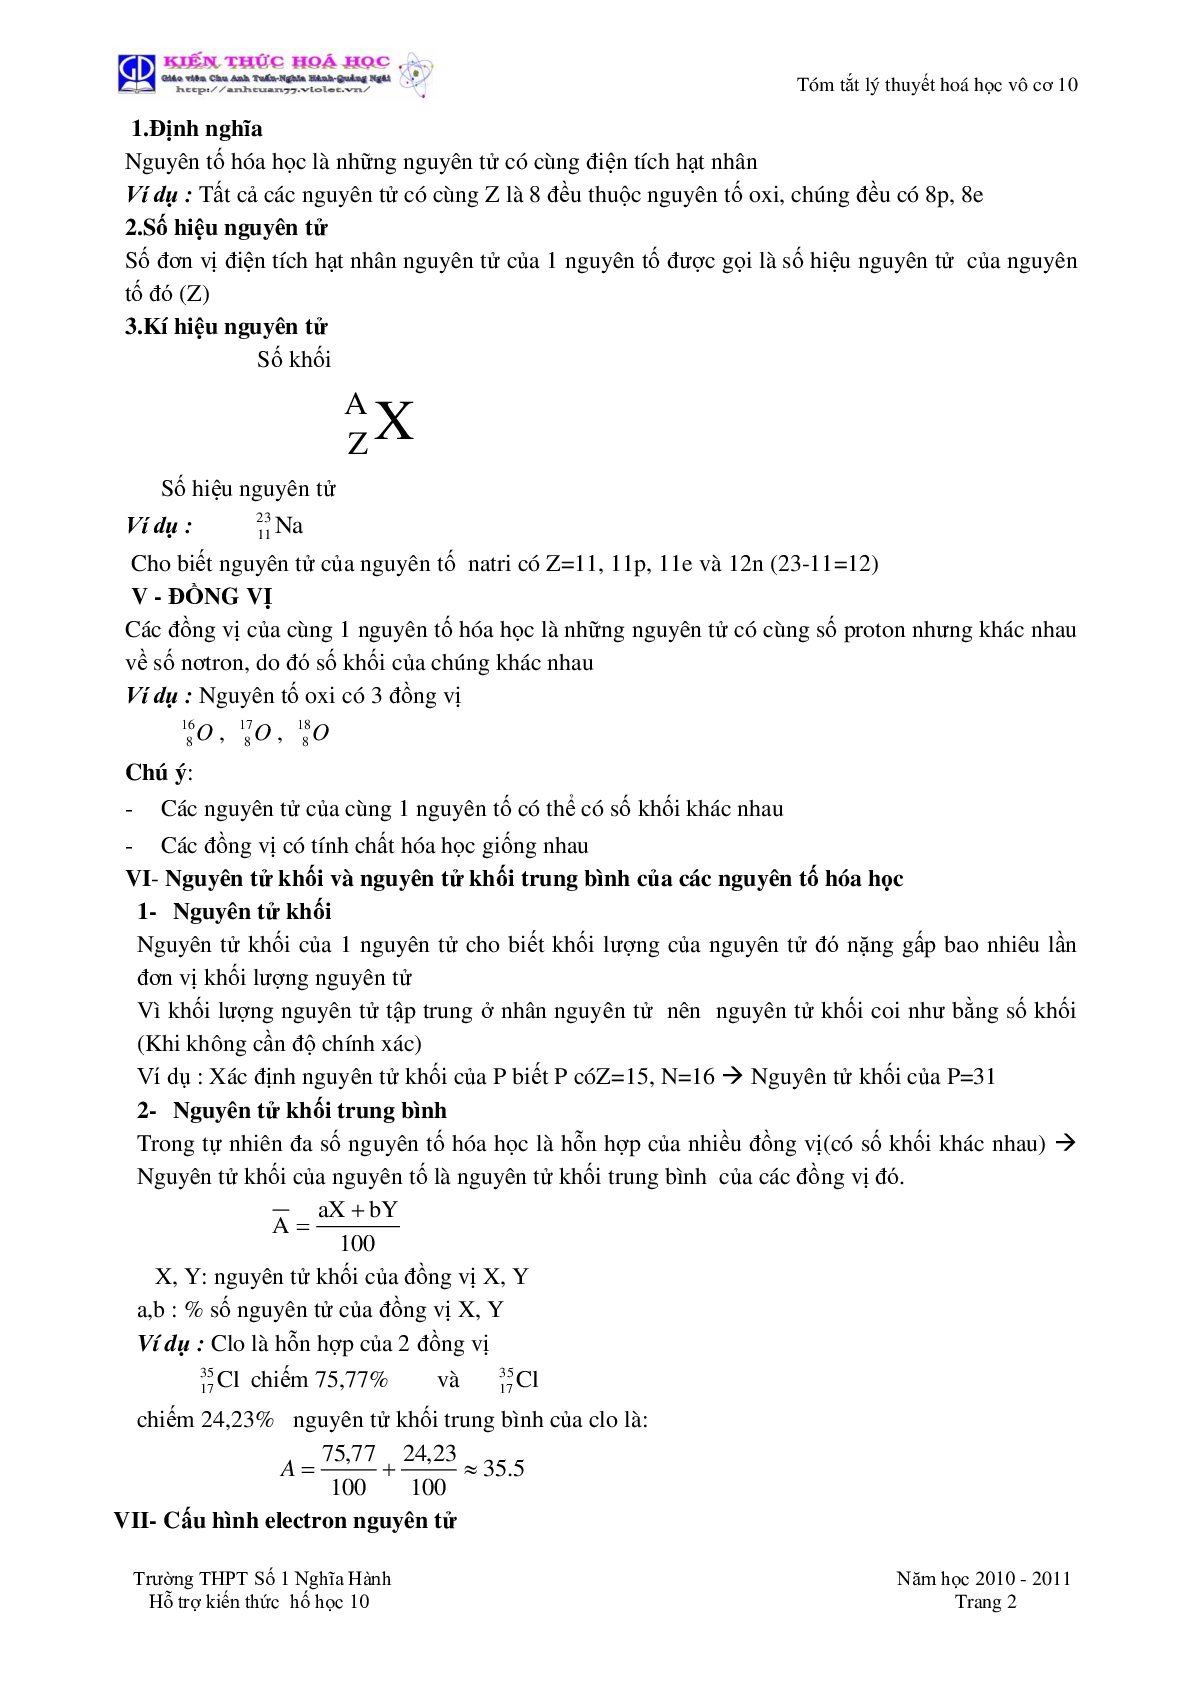 Tóm tắt lý thuyết môn Hóa Học lớp 10 (trang 2)